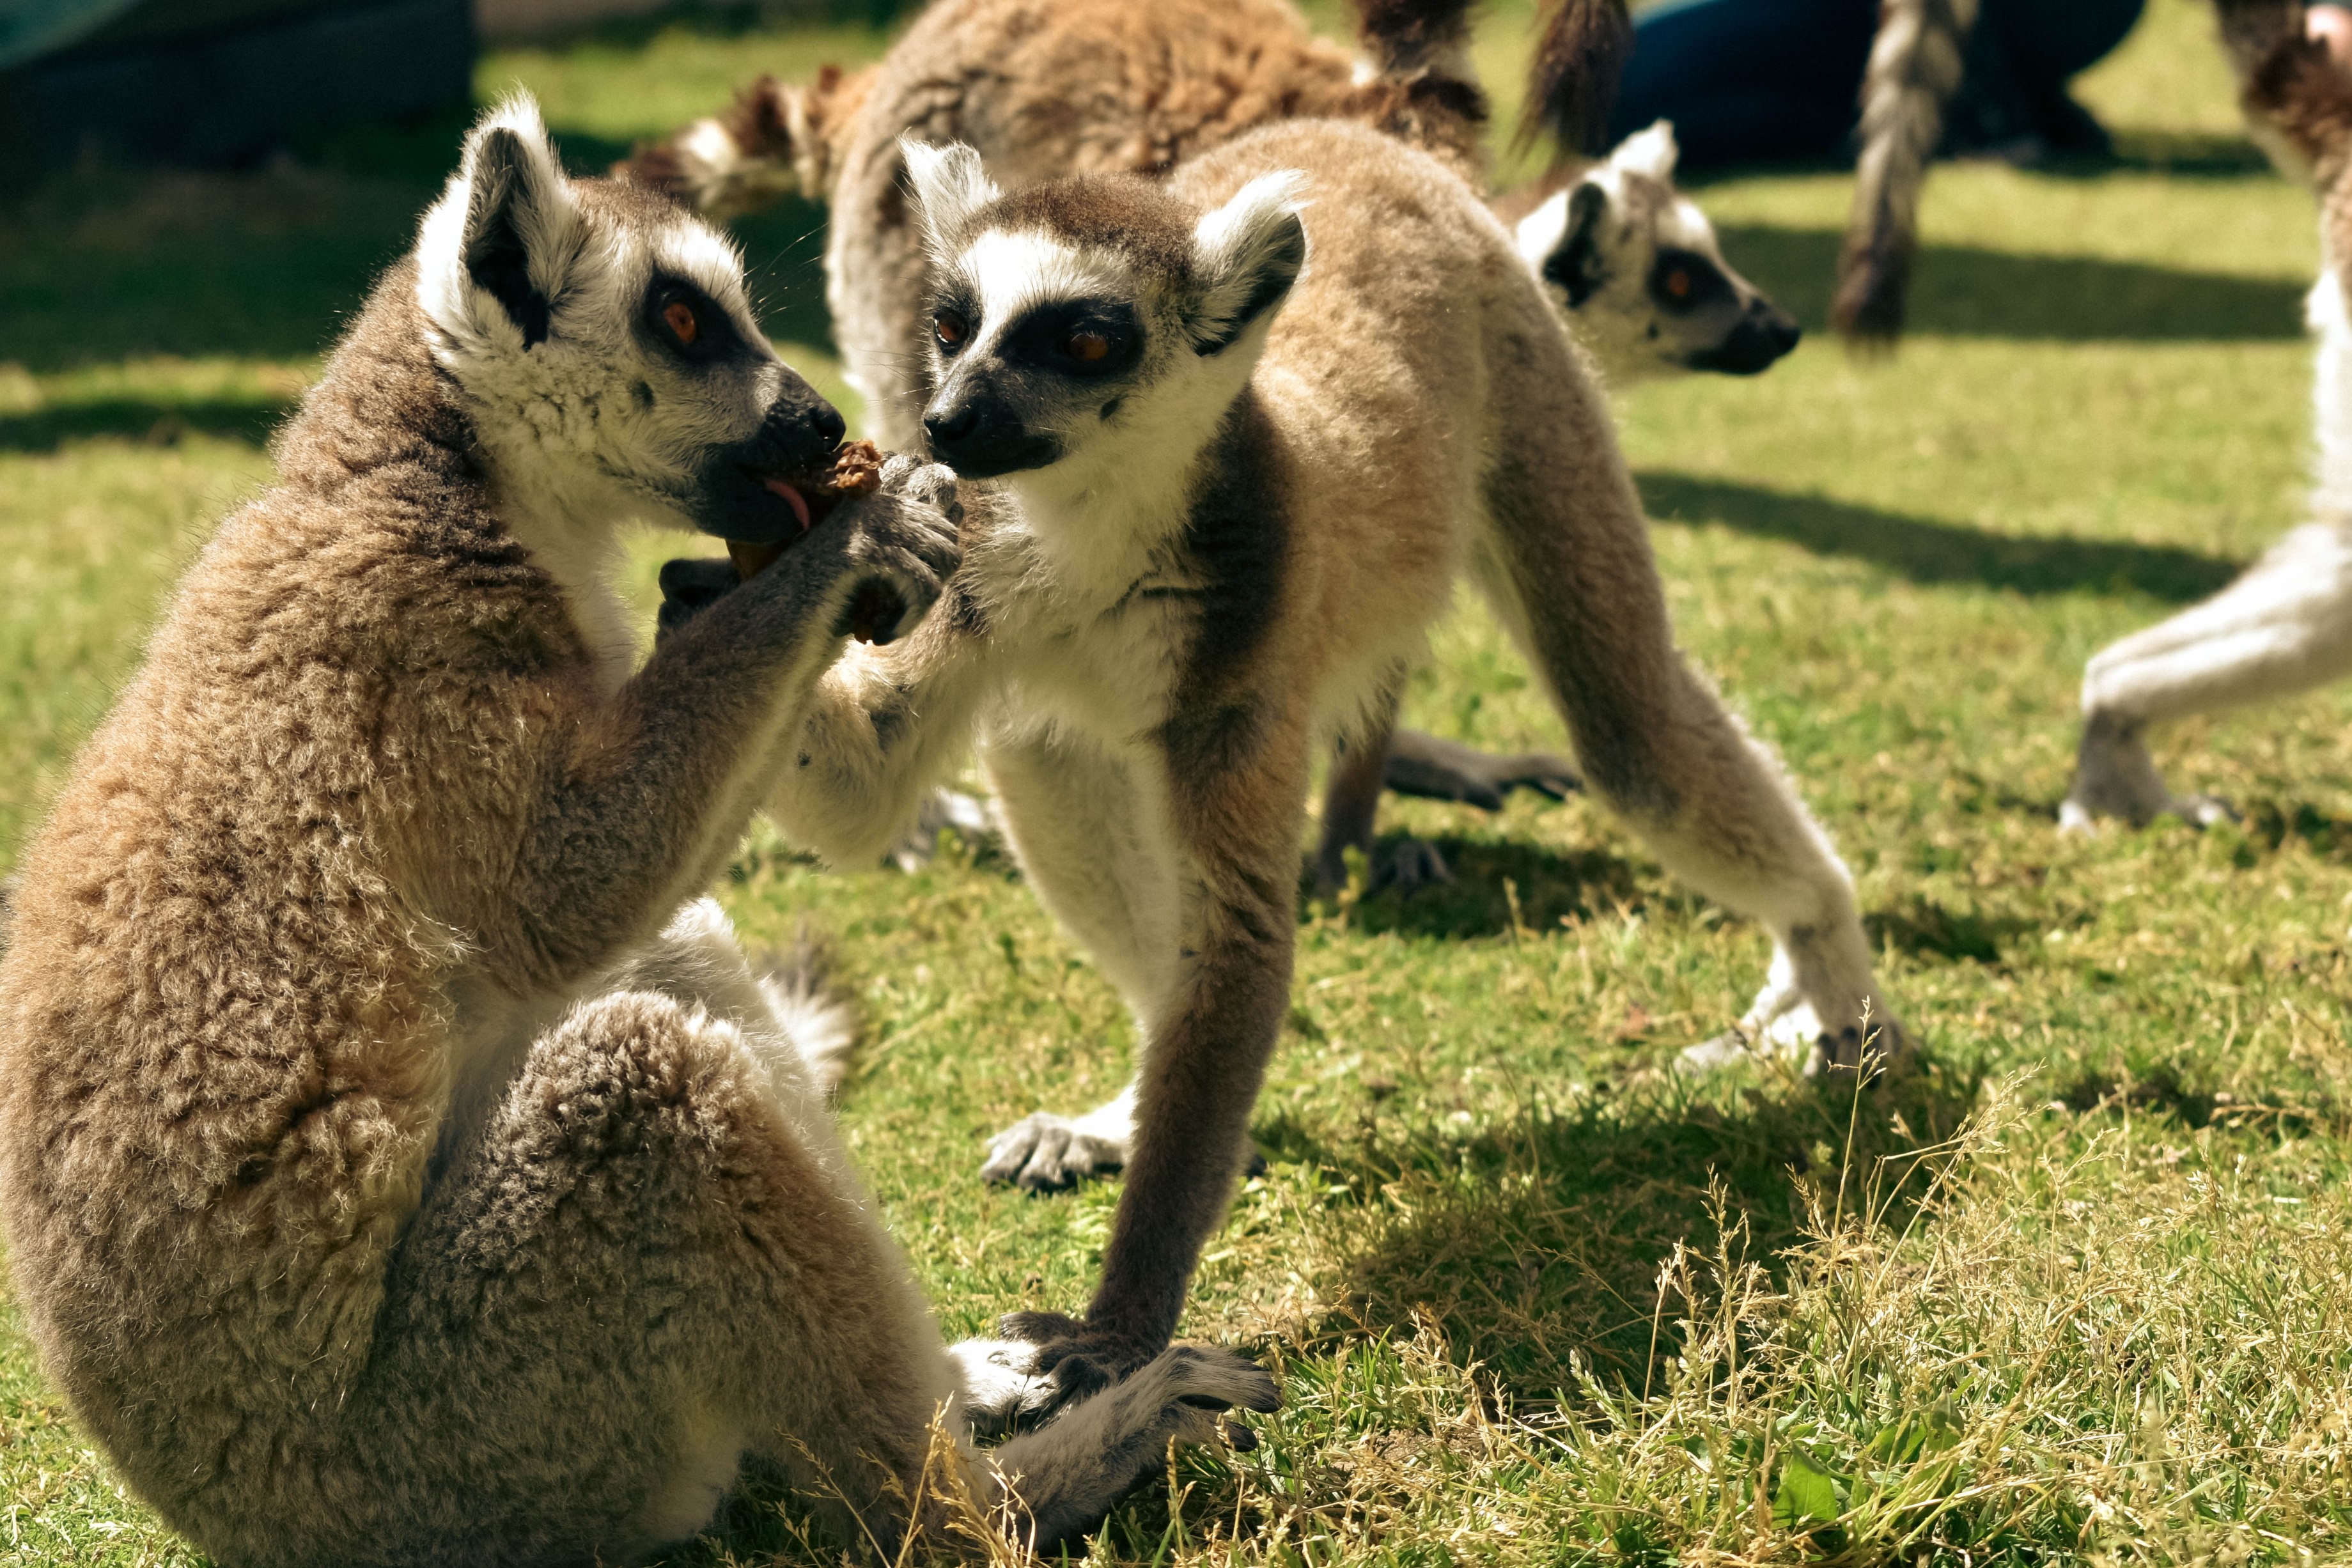 facts about lemurs